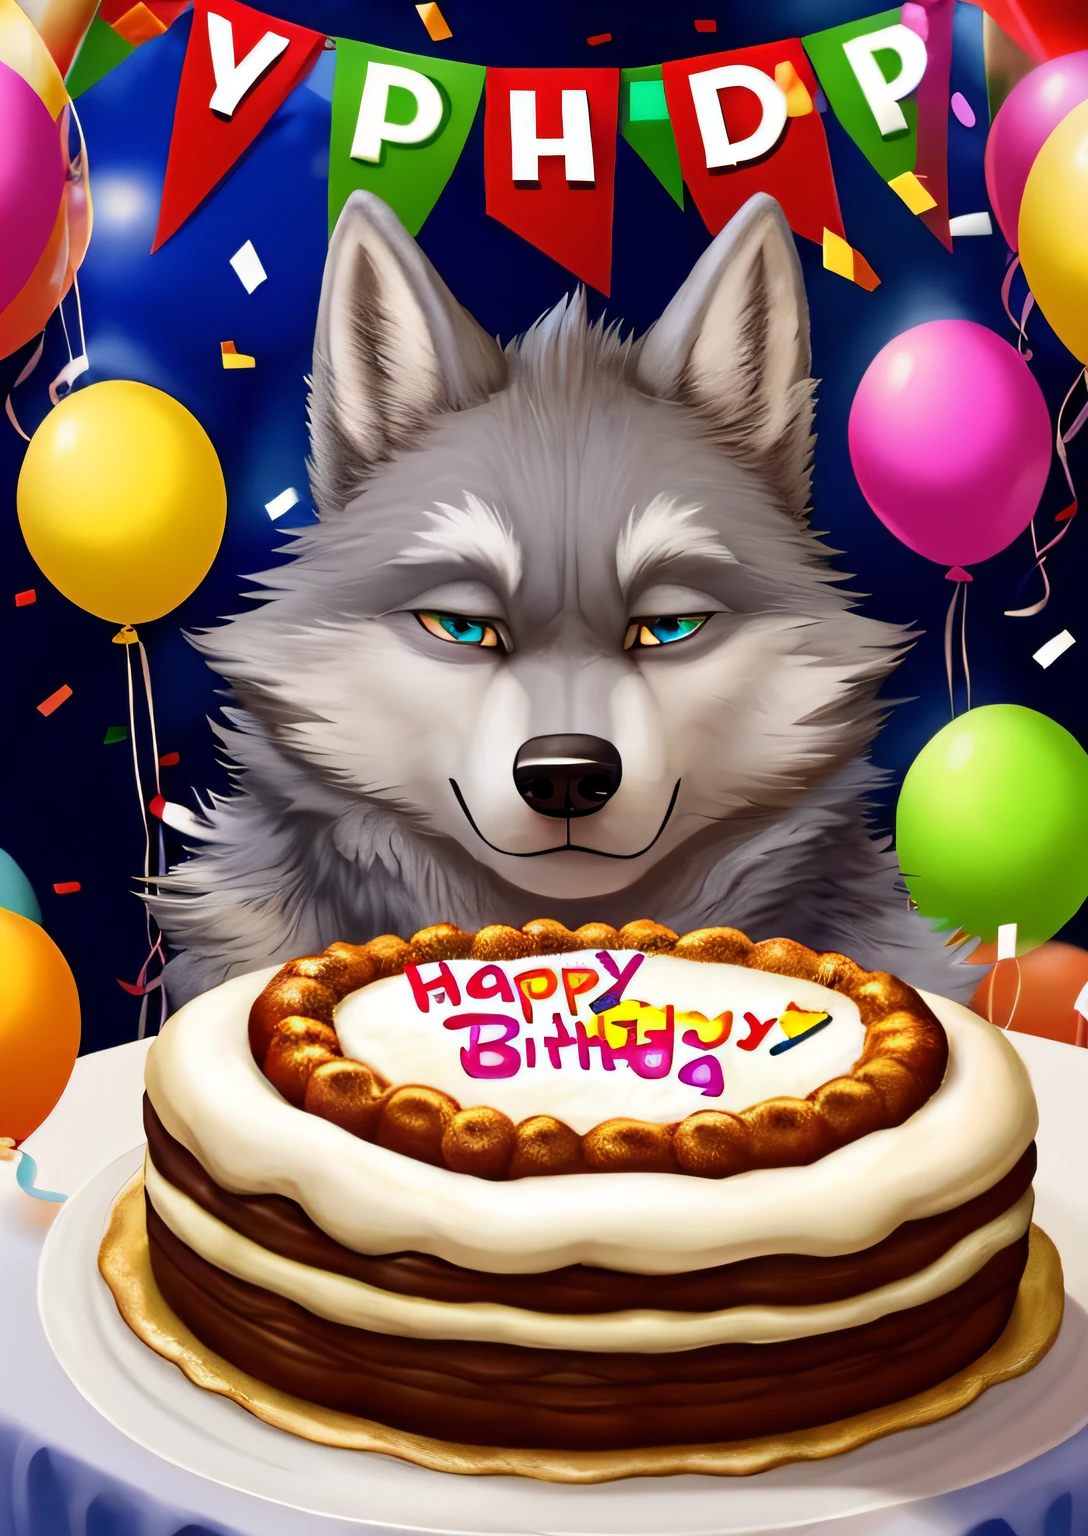 밝은 회색 털복숭이 늑대가 생일을 맞이하고 있습니다.  ( 숫자 27을 이루는 케이크의 촛불을 끈다)